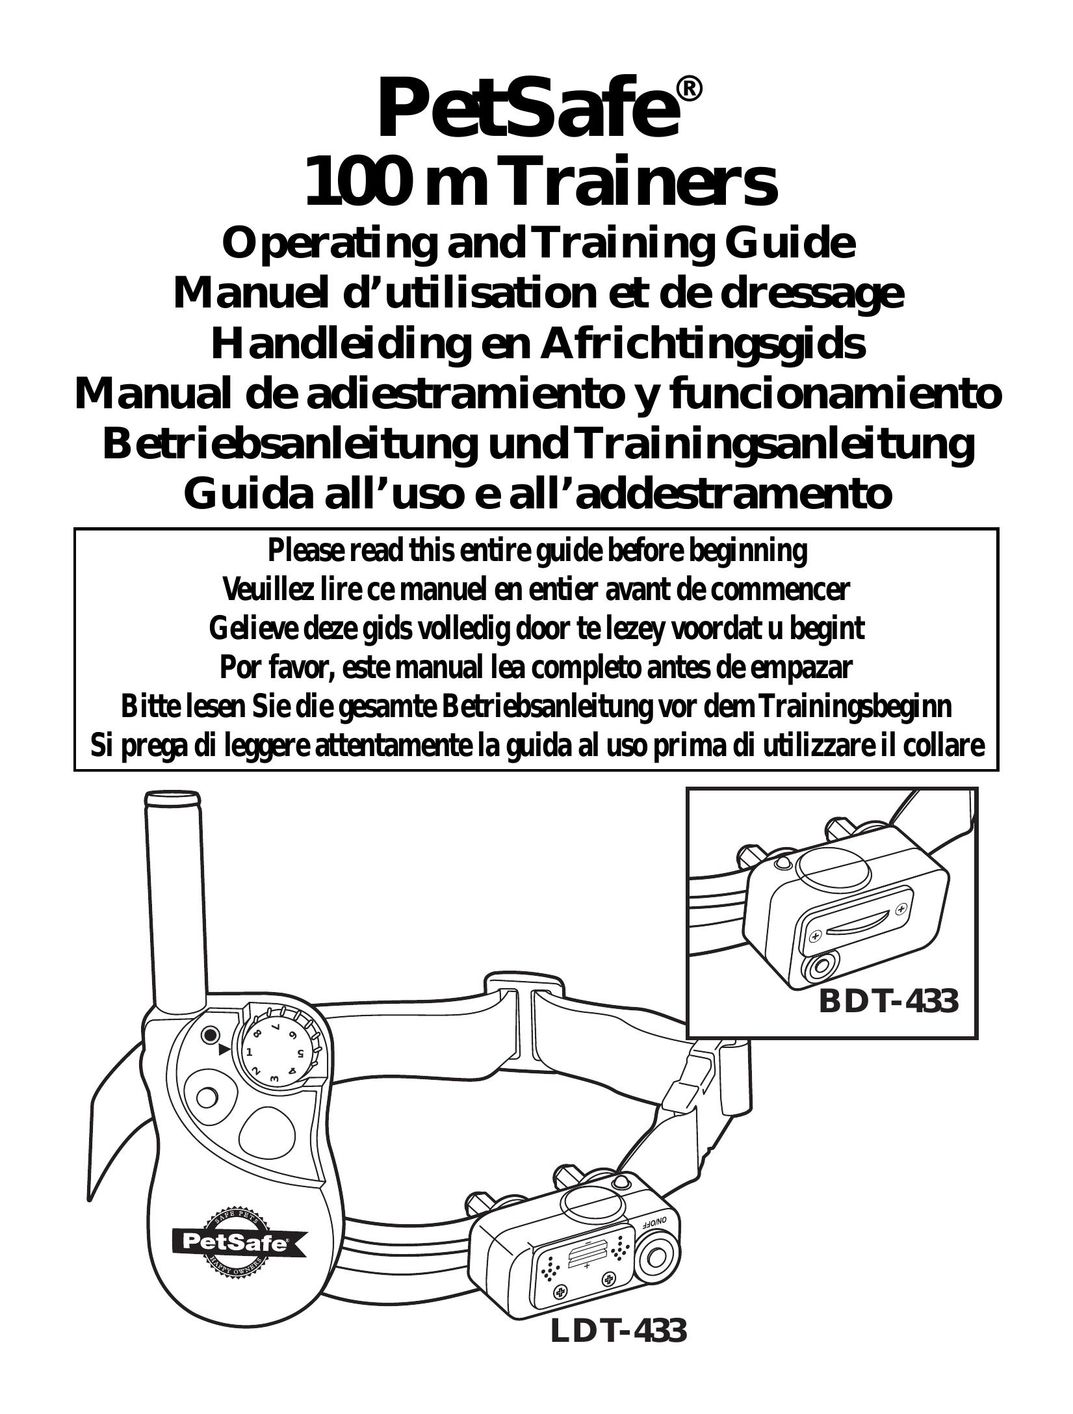 Petsafe LDT-433 Carpet Cleaner User Manual